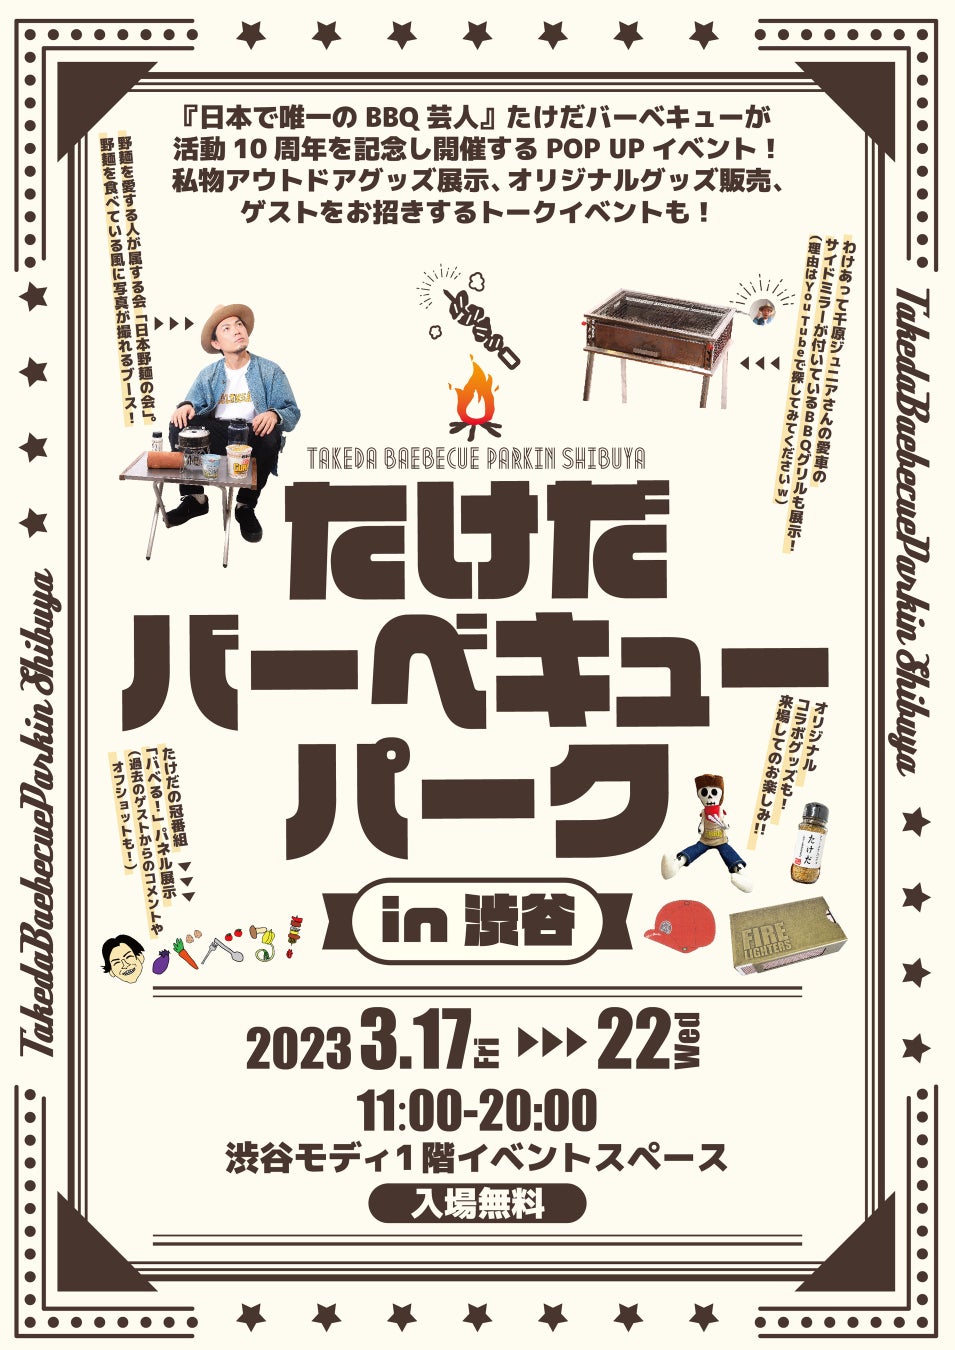 たけだバーベキュー襲名10周年記念のPOP UPイベント「たけだバーベキューパークin渋谷」渋谷モディで開催！！